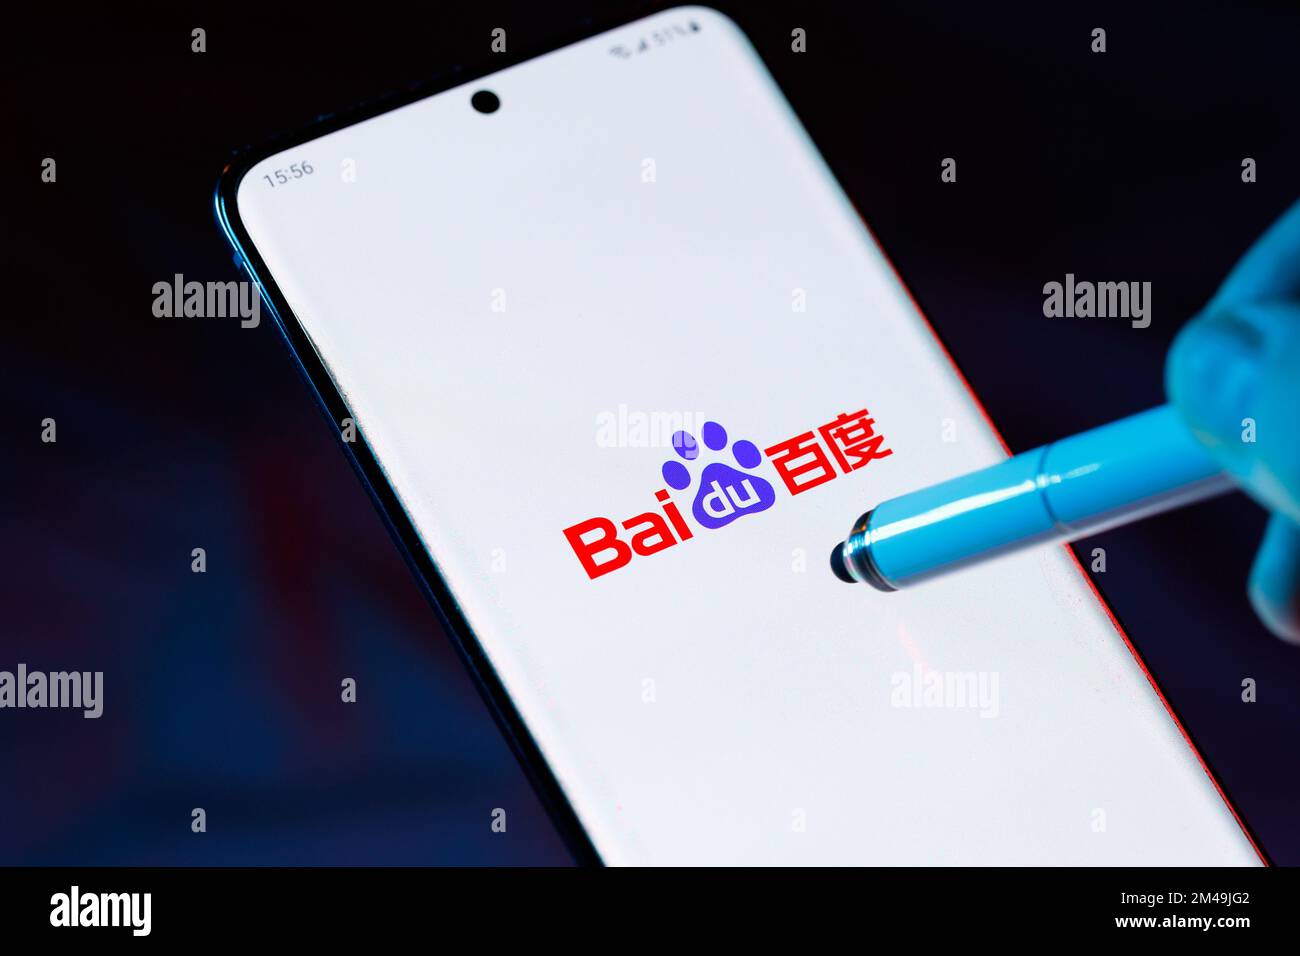 Logo de Baidu 百度 en un smartphone con un lápiz apuntando a la pantalla. Baidu es una compañía china de Internet y tecnología de IA. Foto de stock